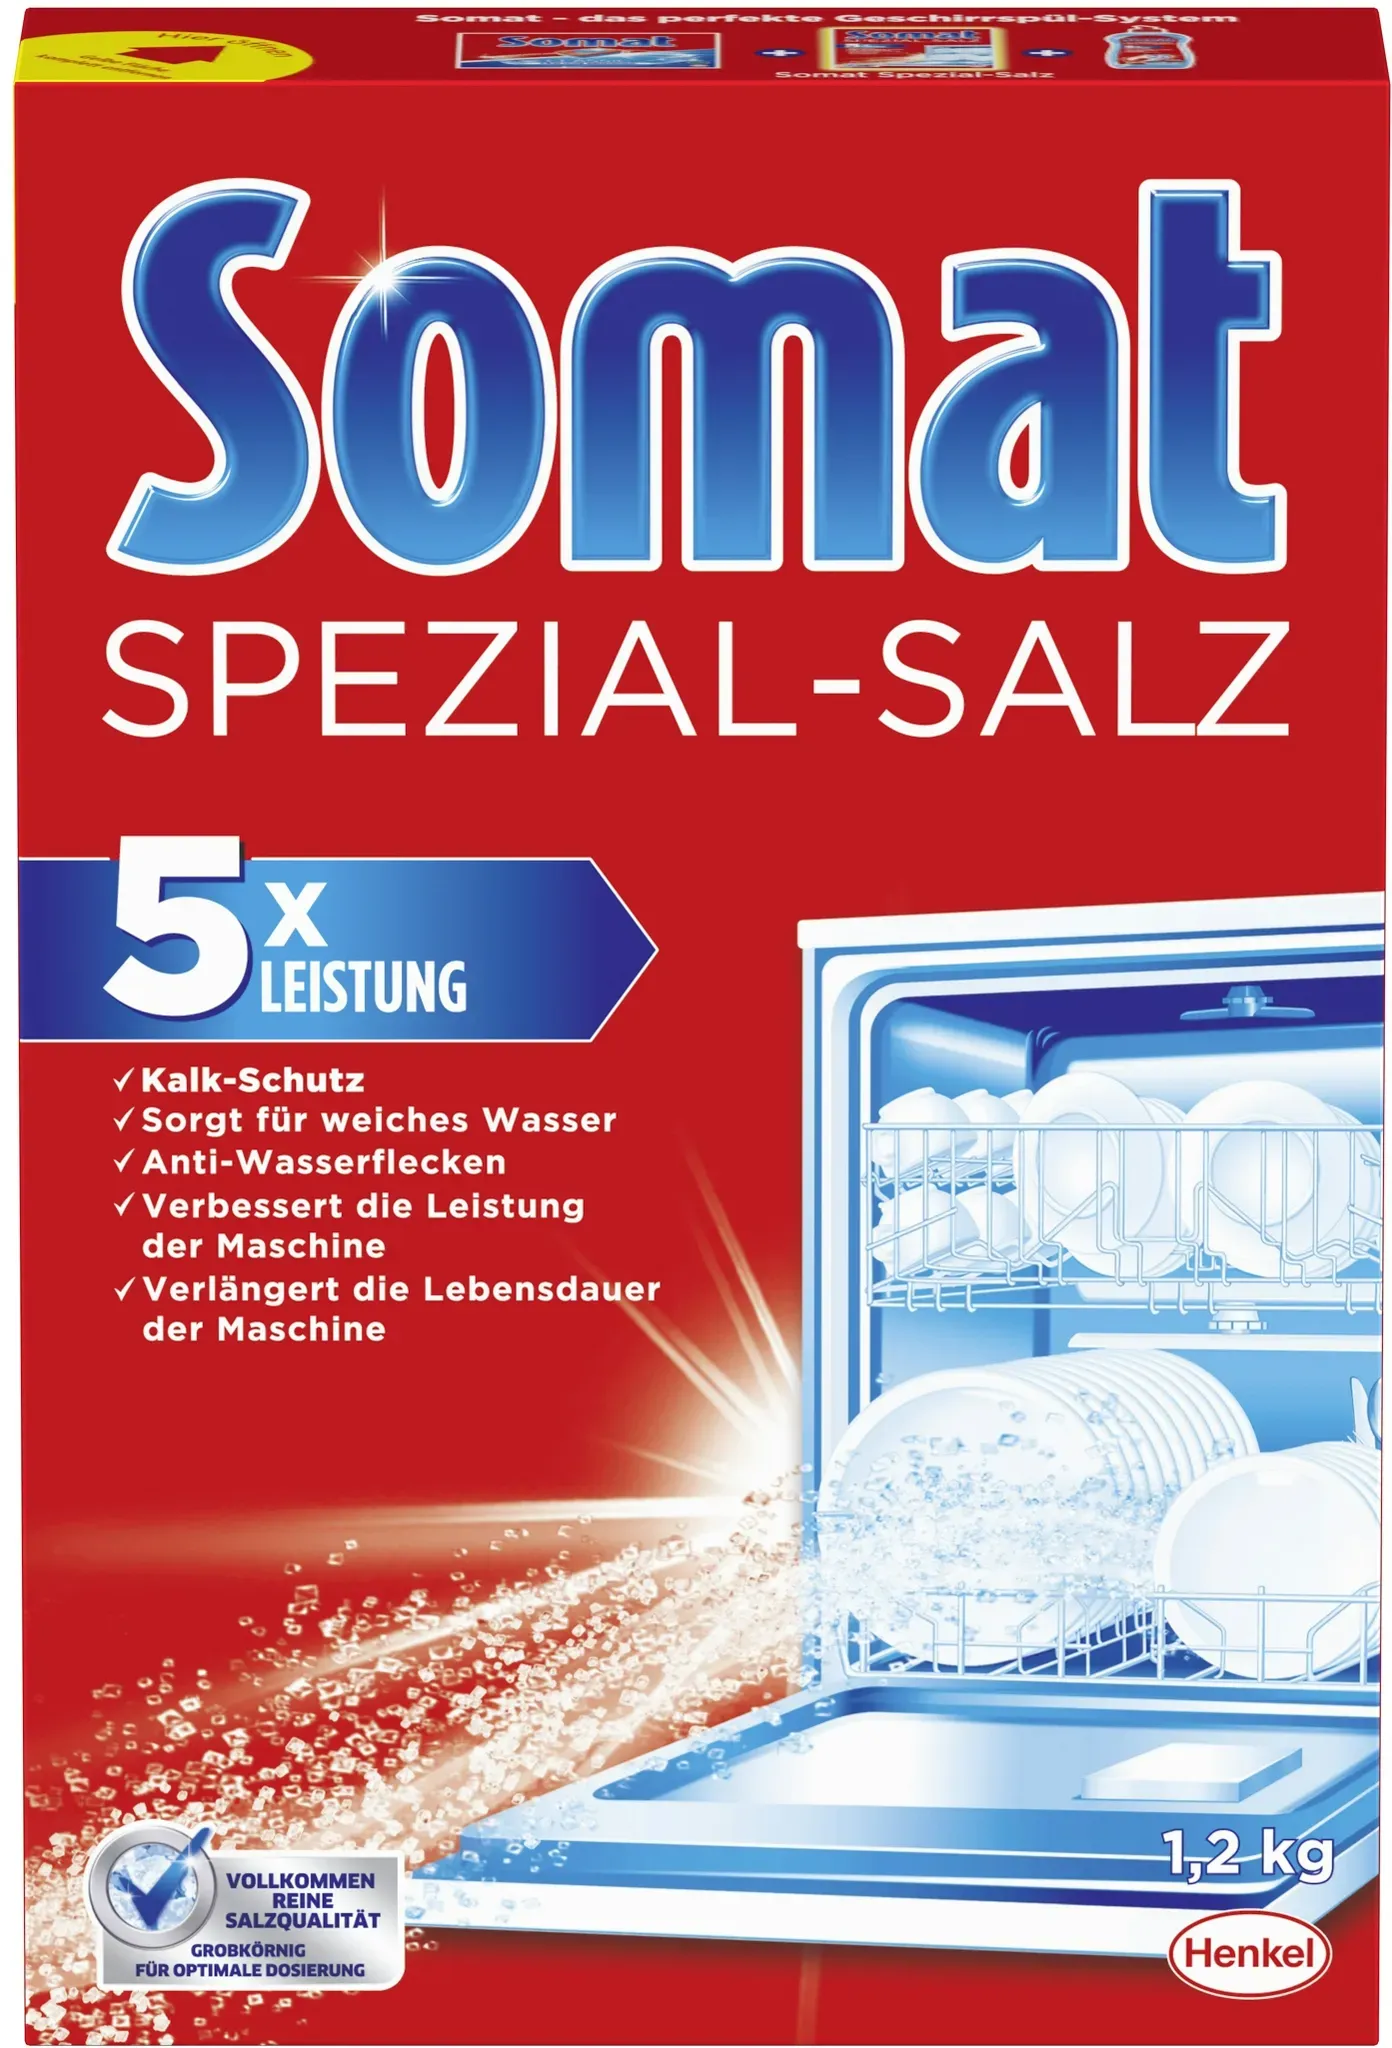 Somat Spezial-Salz Spülmaschinensalz Spülmachine Geschirrspülleistung 1,2kg